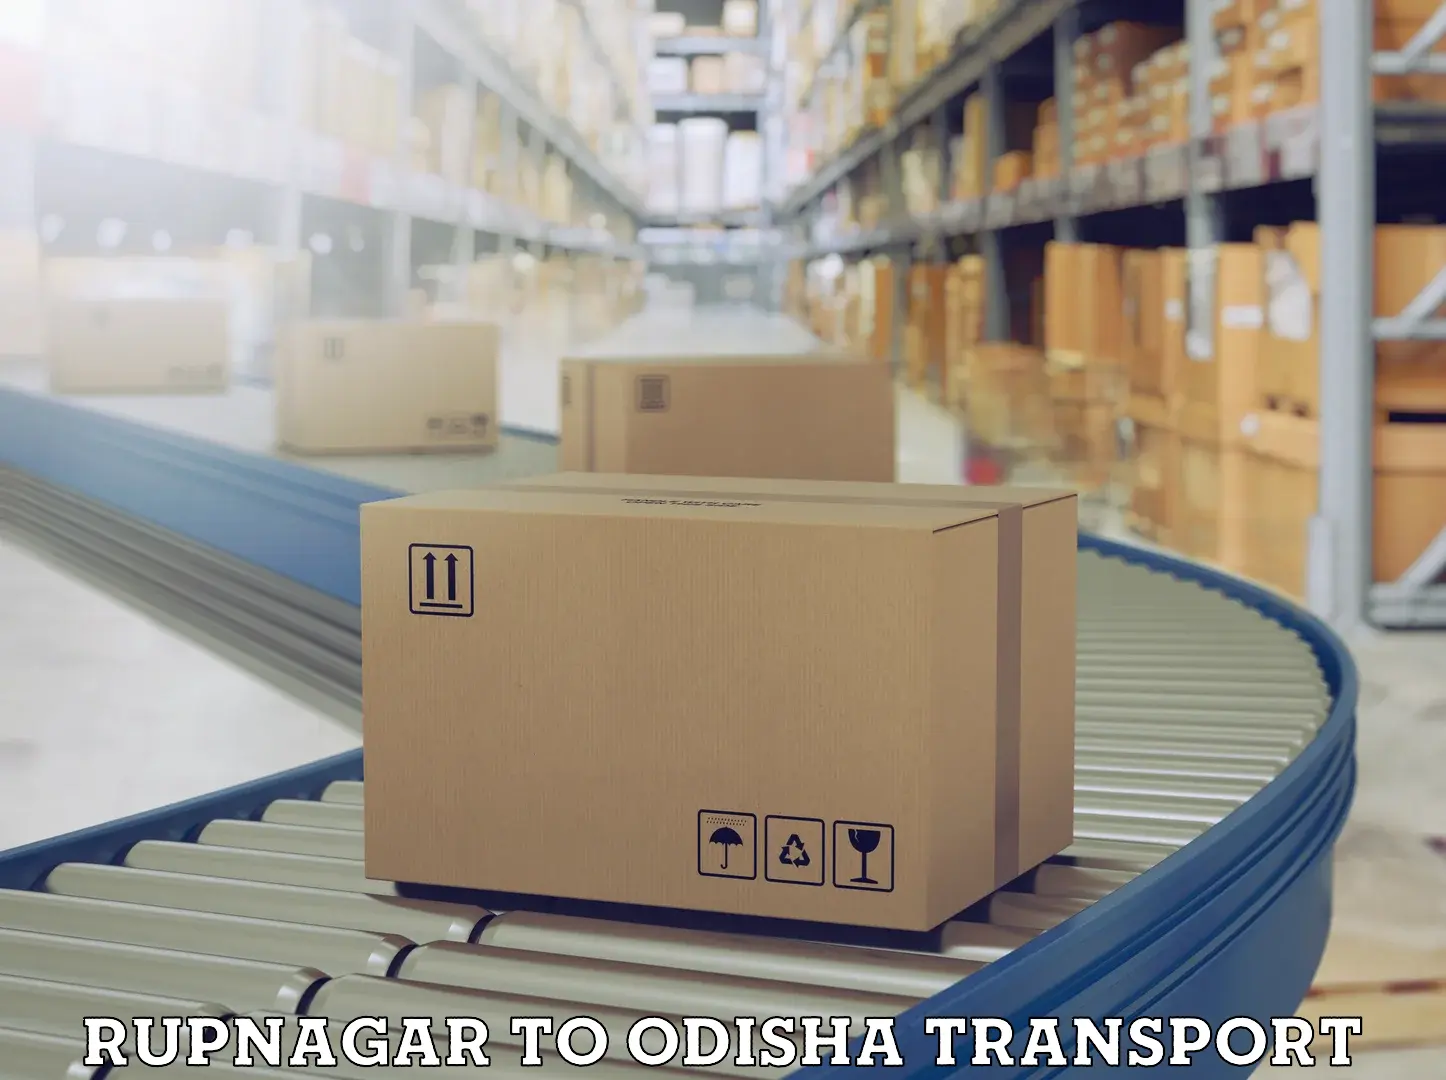 Commercial transport service Rupnagar to Bonth